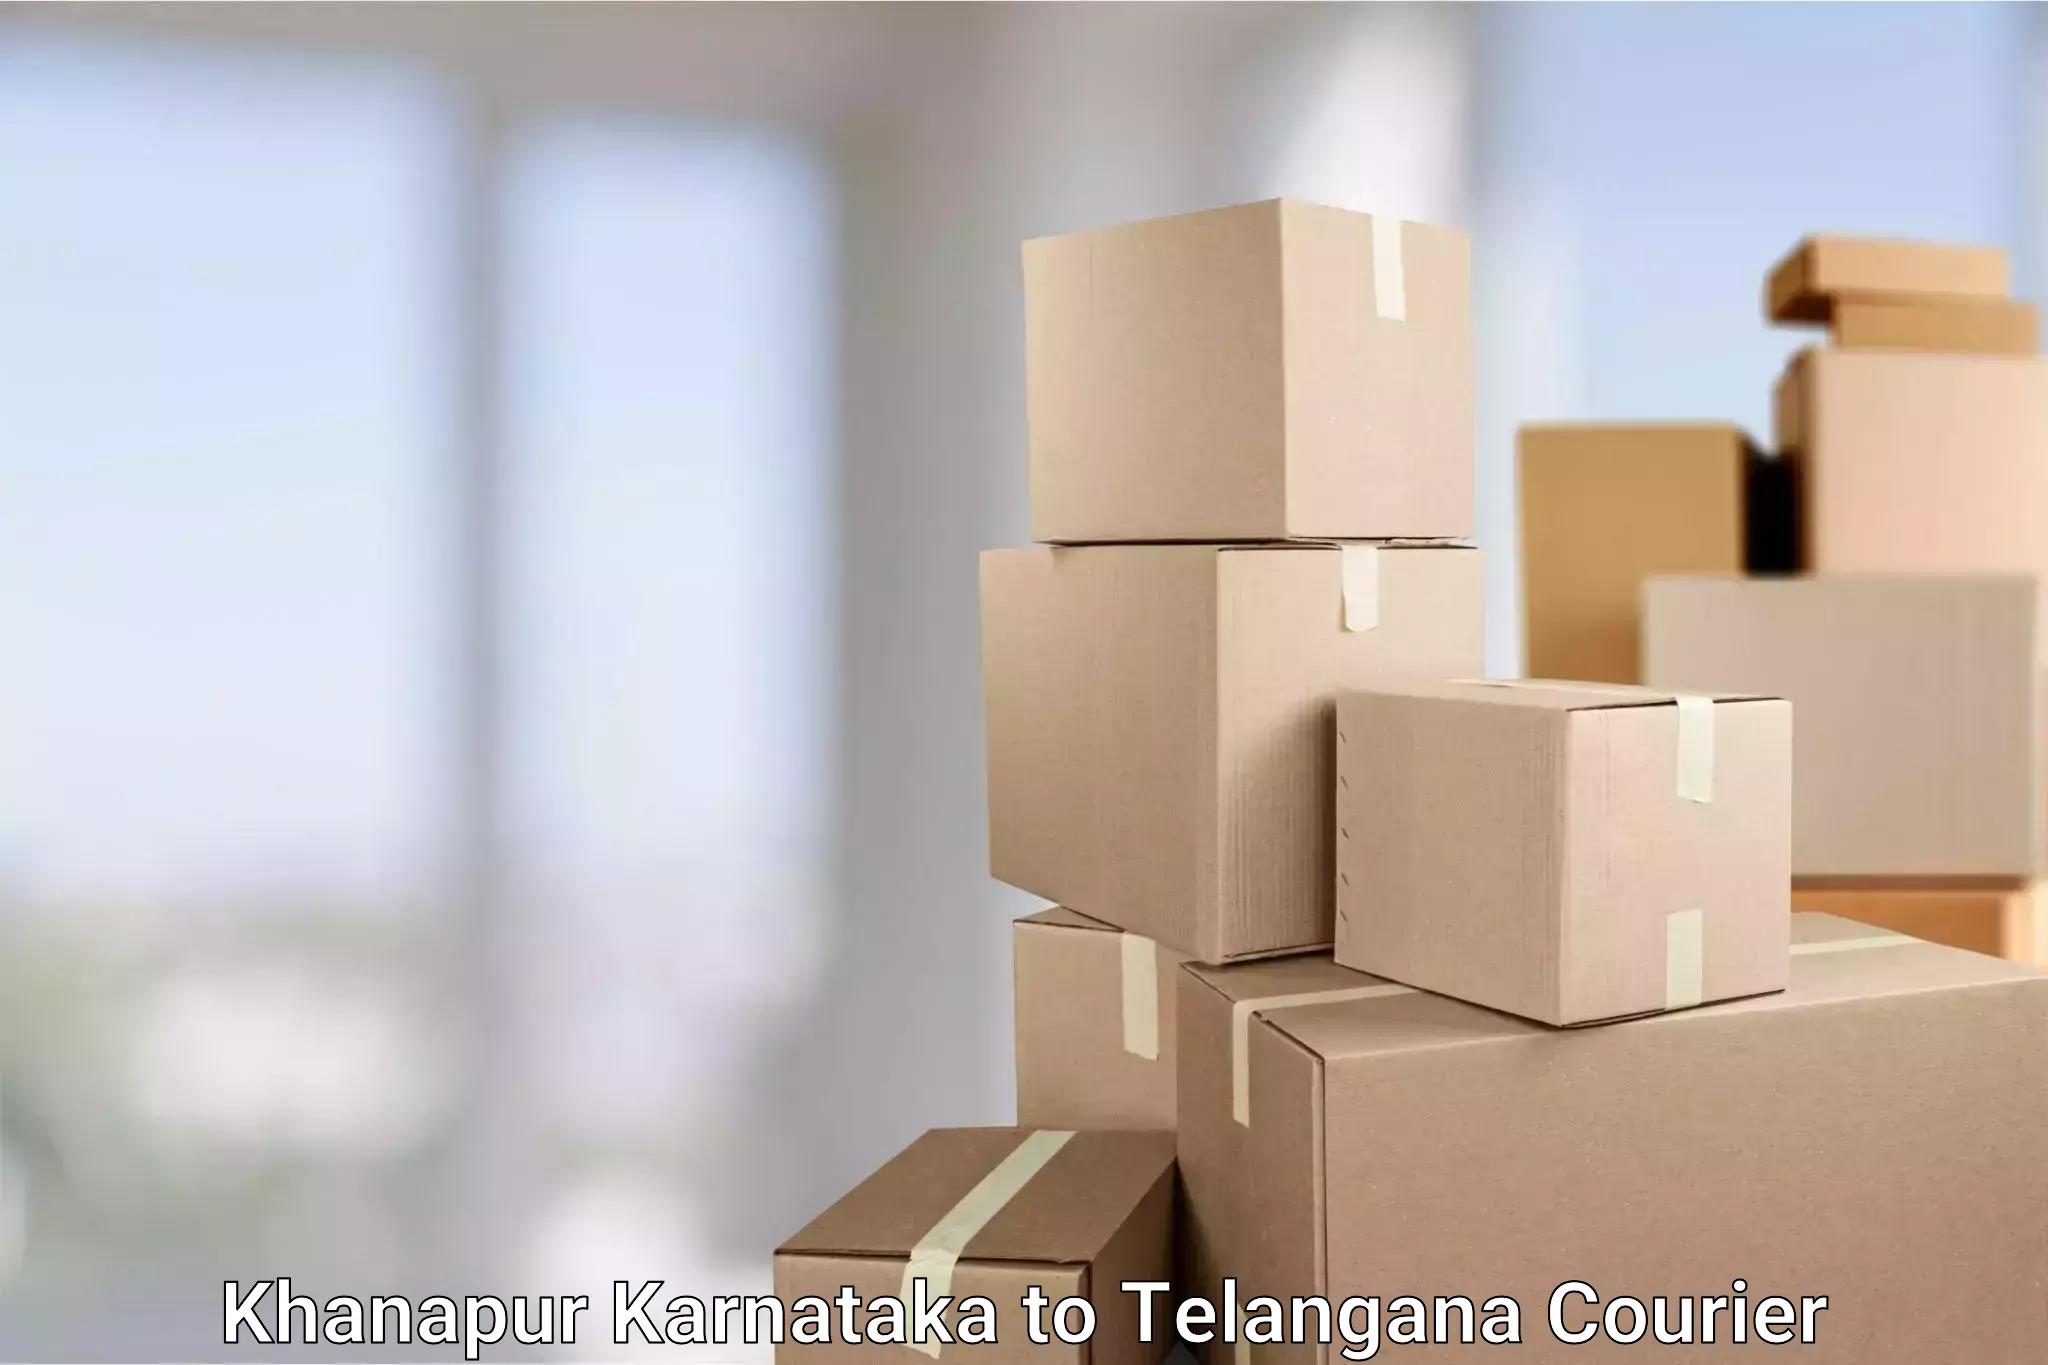 Large-scale shipping solutions Khanapur Karnataka to Vemulawada